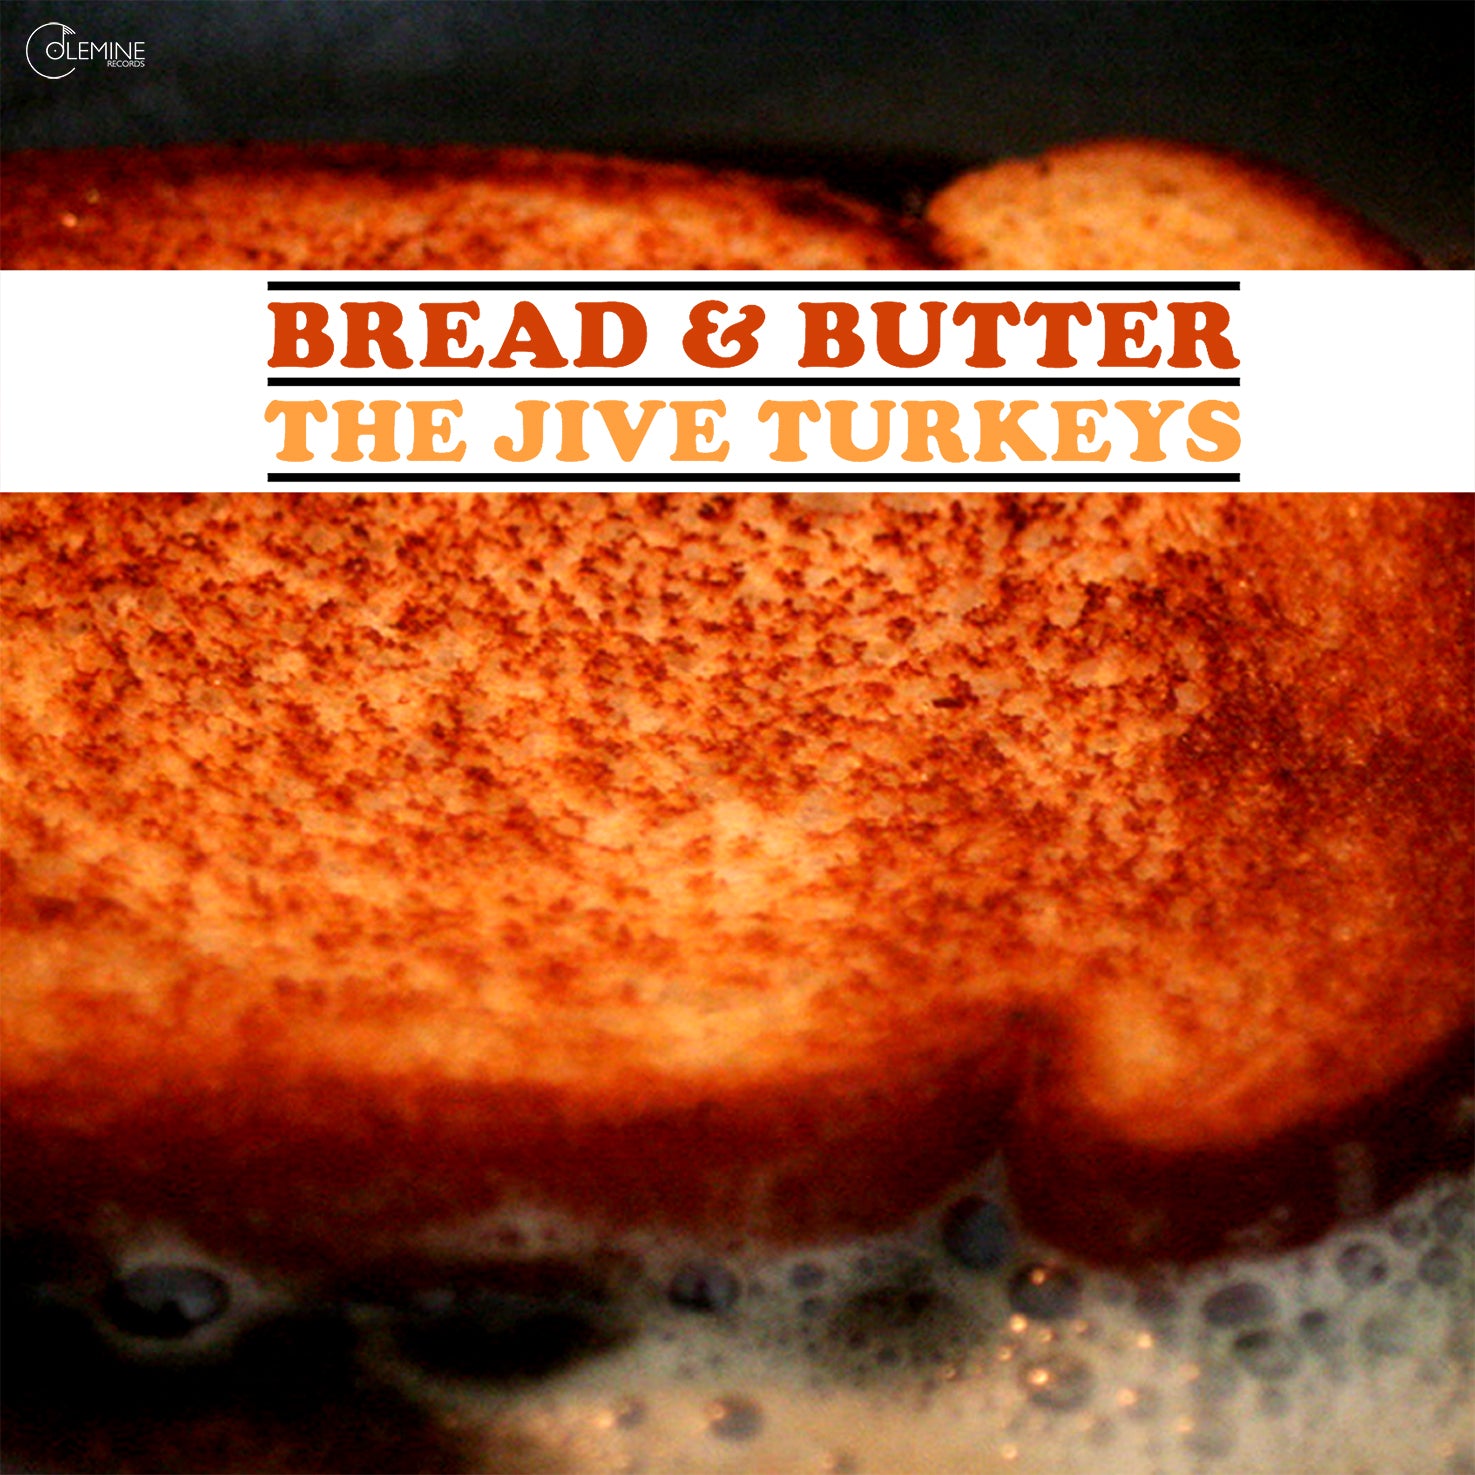 The Jive Turkeys - Bread & Butter [Turkey Gravy Brown]